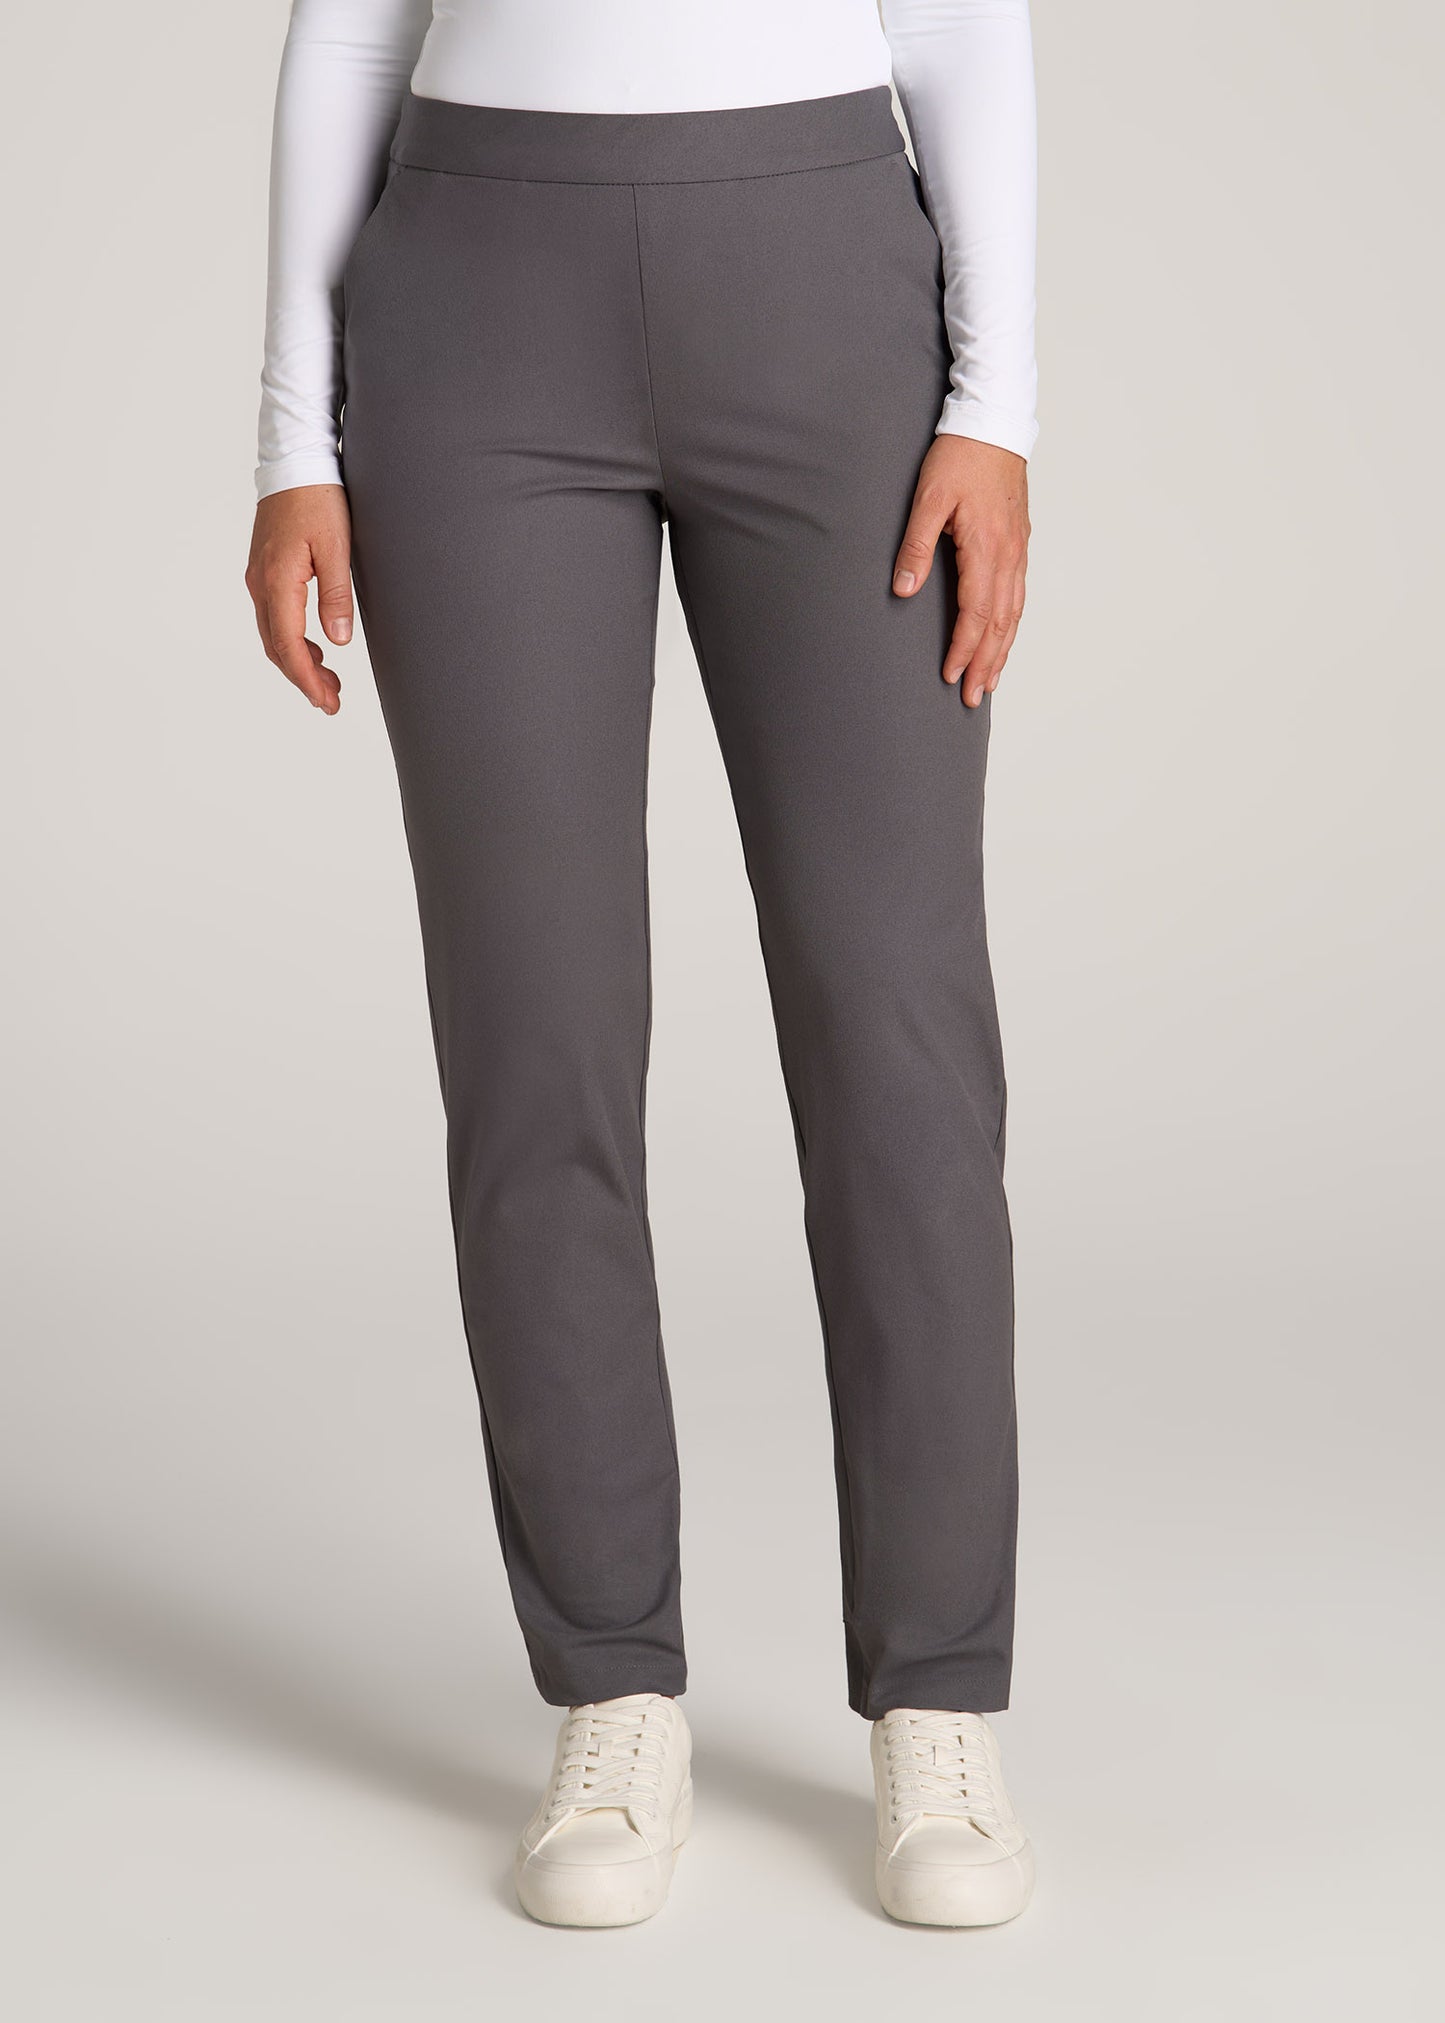 Men's Flat Front Pant - Suit Separate - Classic Cut - Blue/White Pinco –  Hardwick.com